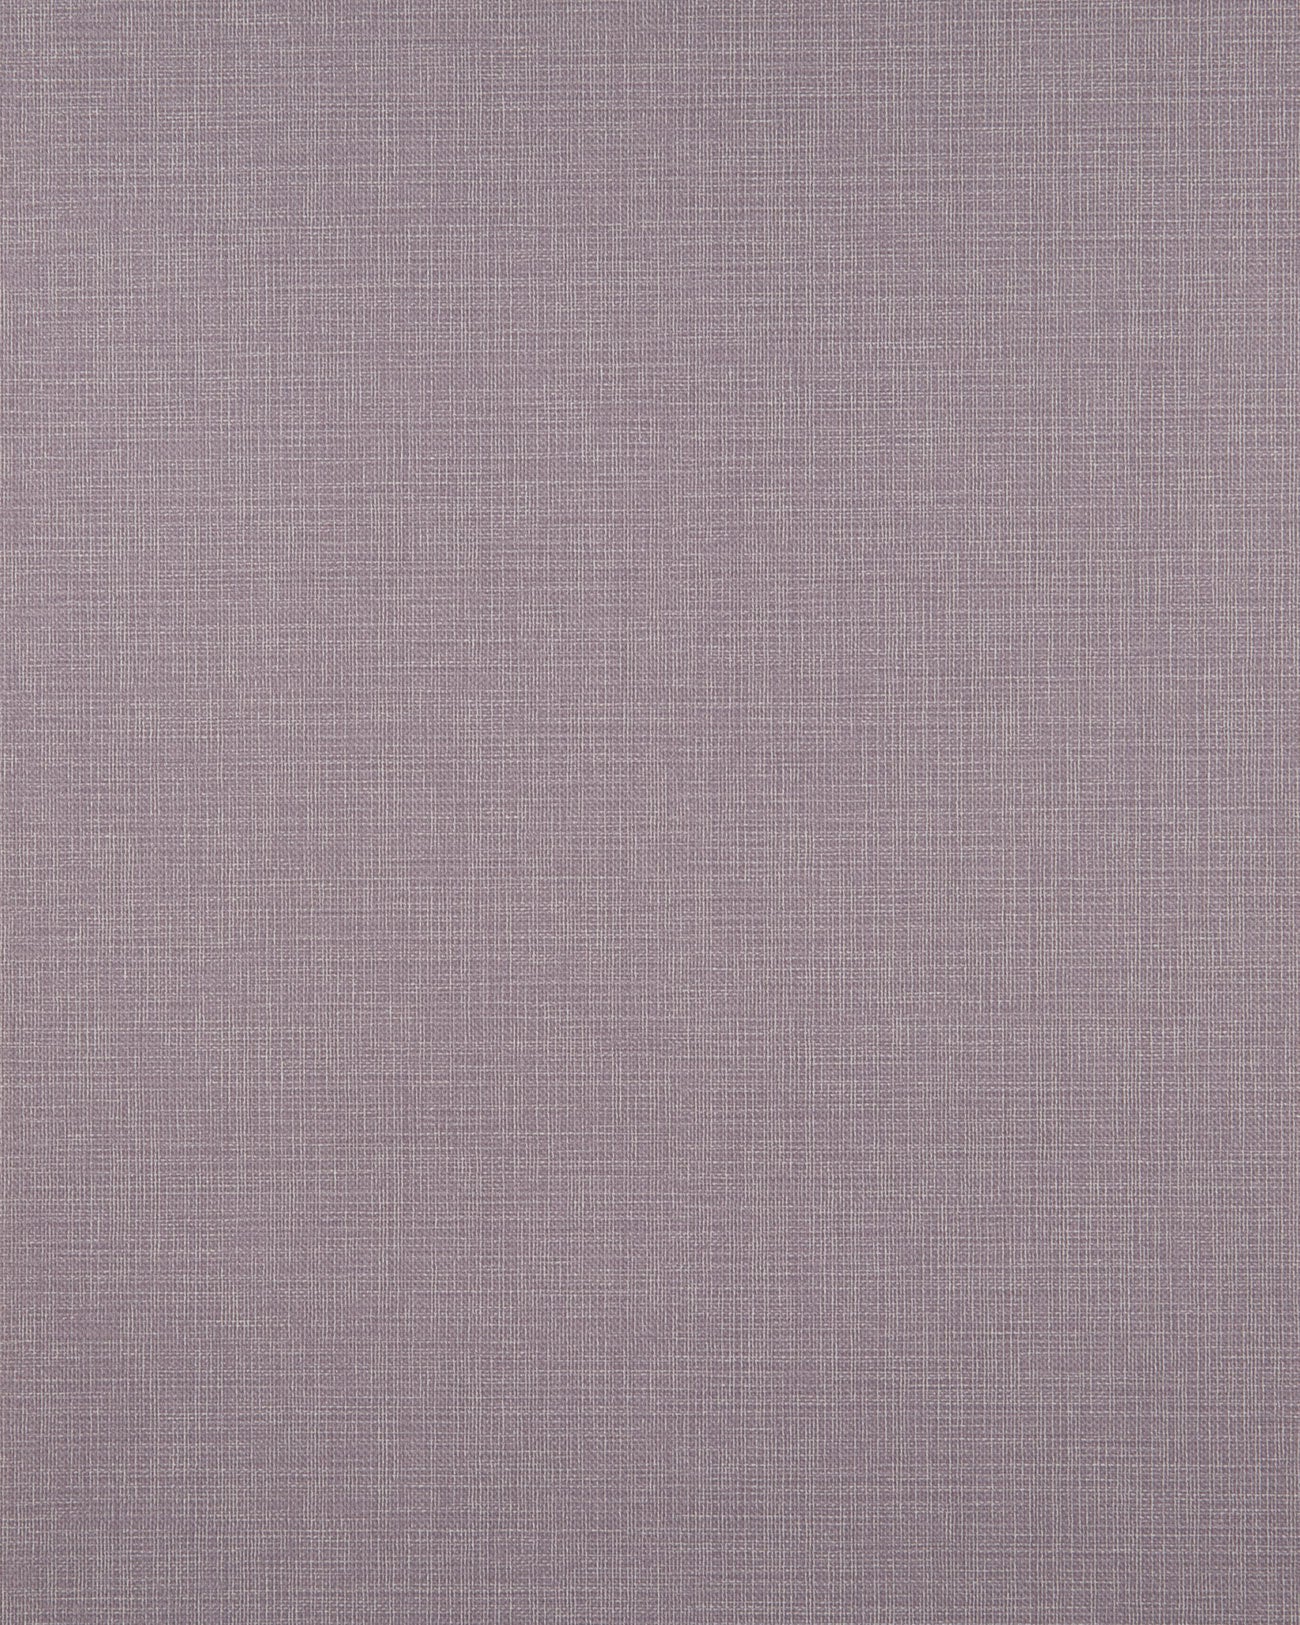 Profhome unicolor wallpaper BV919097-DI textured hot embossed non-woven wallpaper unicolor matte lilac 5.33 m2